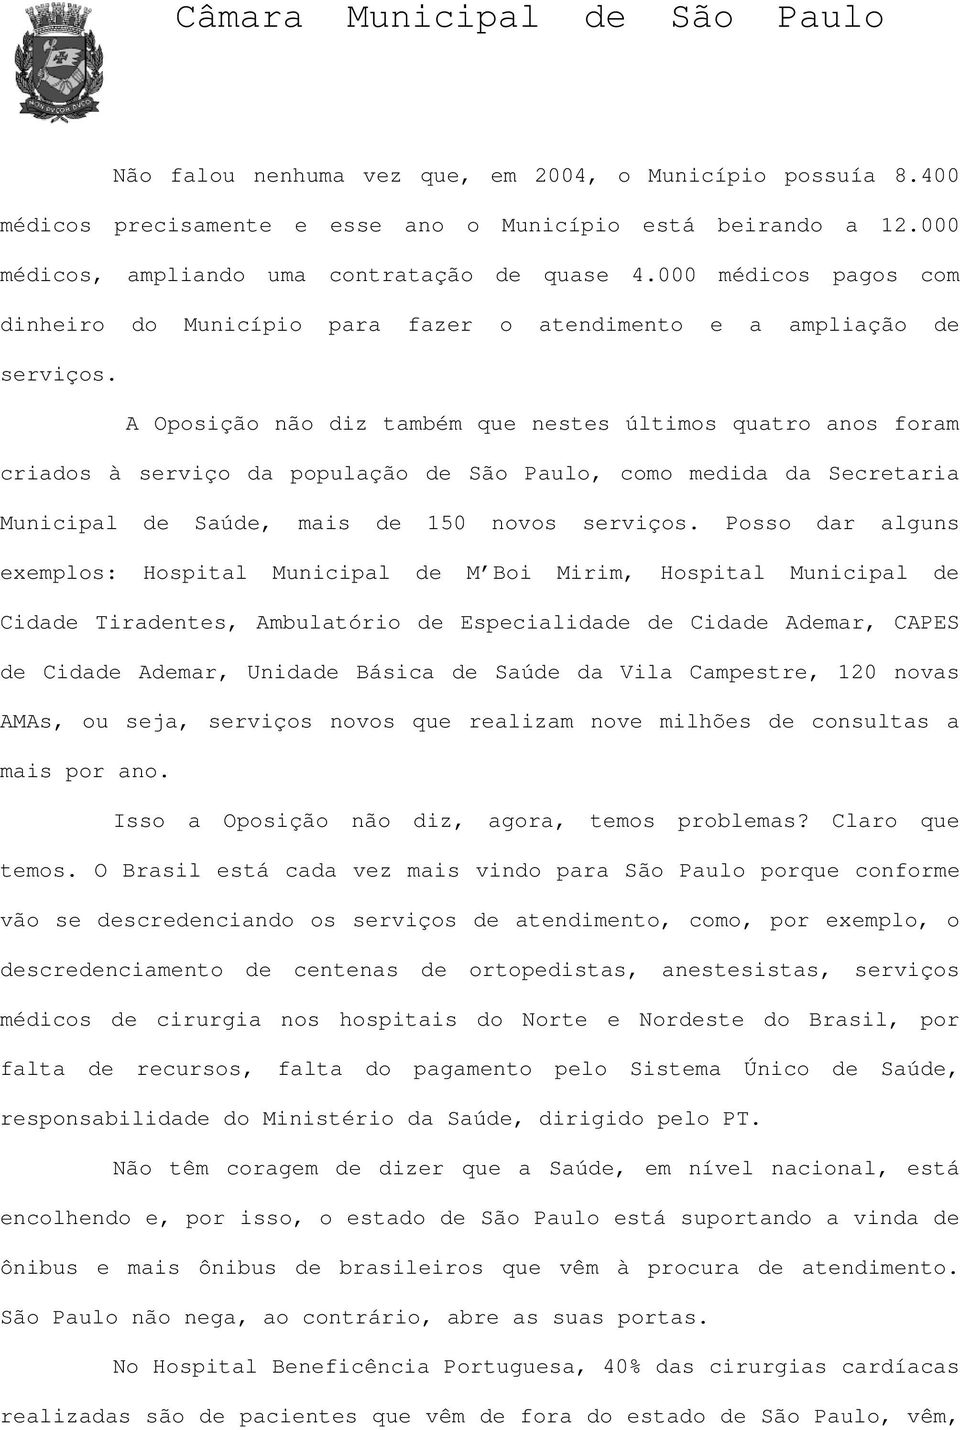 A Oposição não diz também que nestes últimos quatro anos foram criados à serviço da população de São Paulo, como medida da Secretaria Municipal de Saúde, mais de 150 novos serviços.